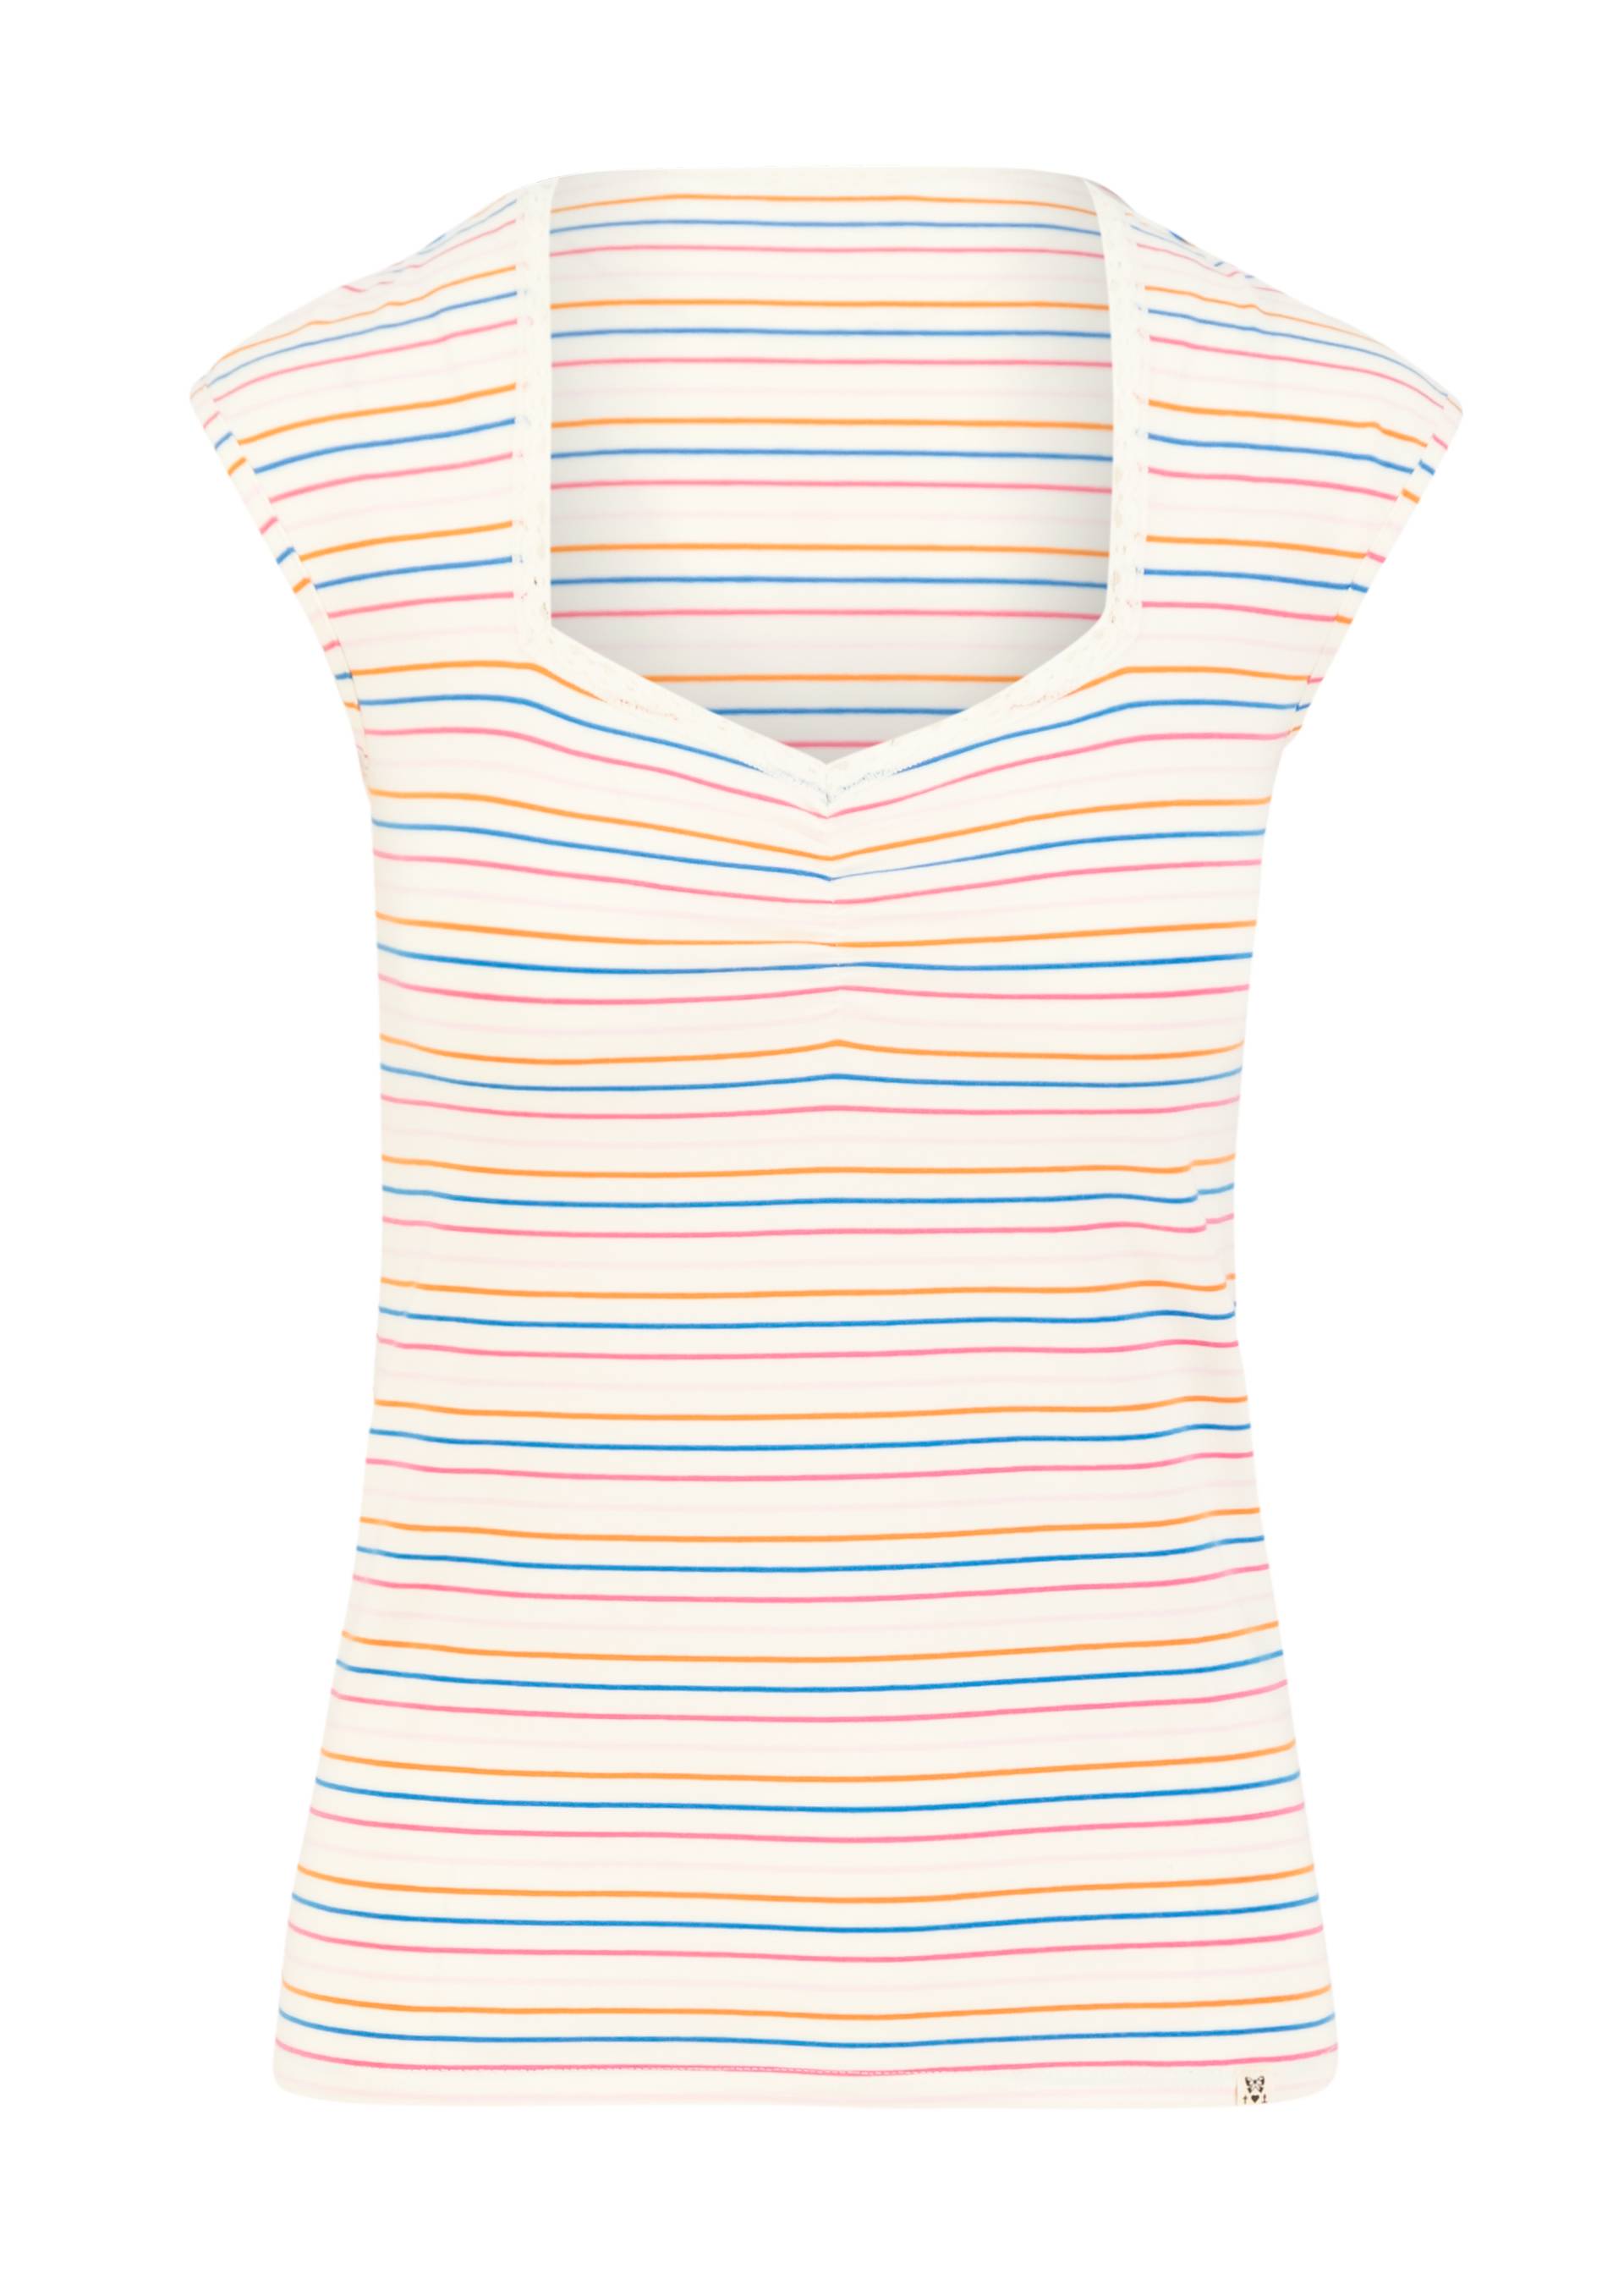 Breton shirt Let Romance  Rule, petite rainbow stripes, Tops, White